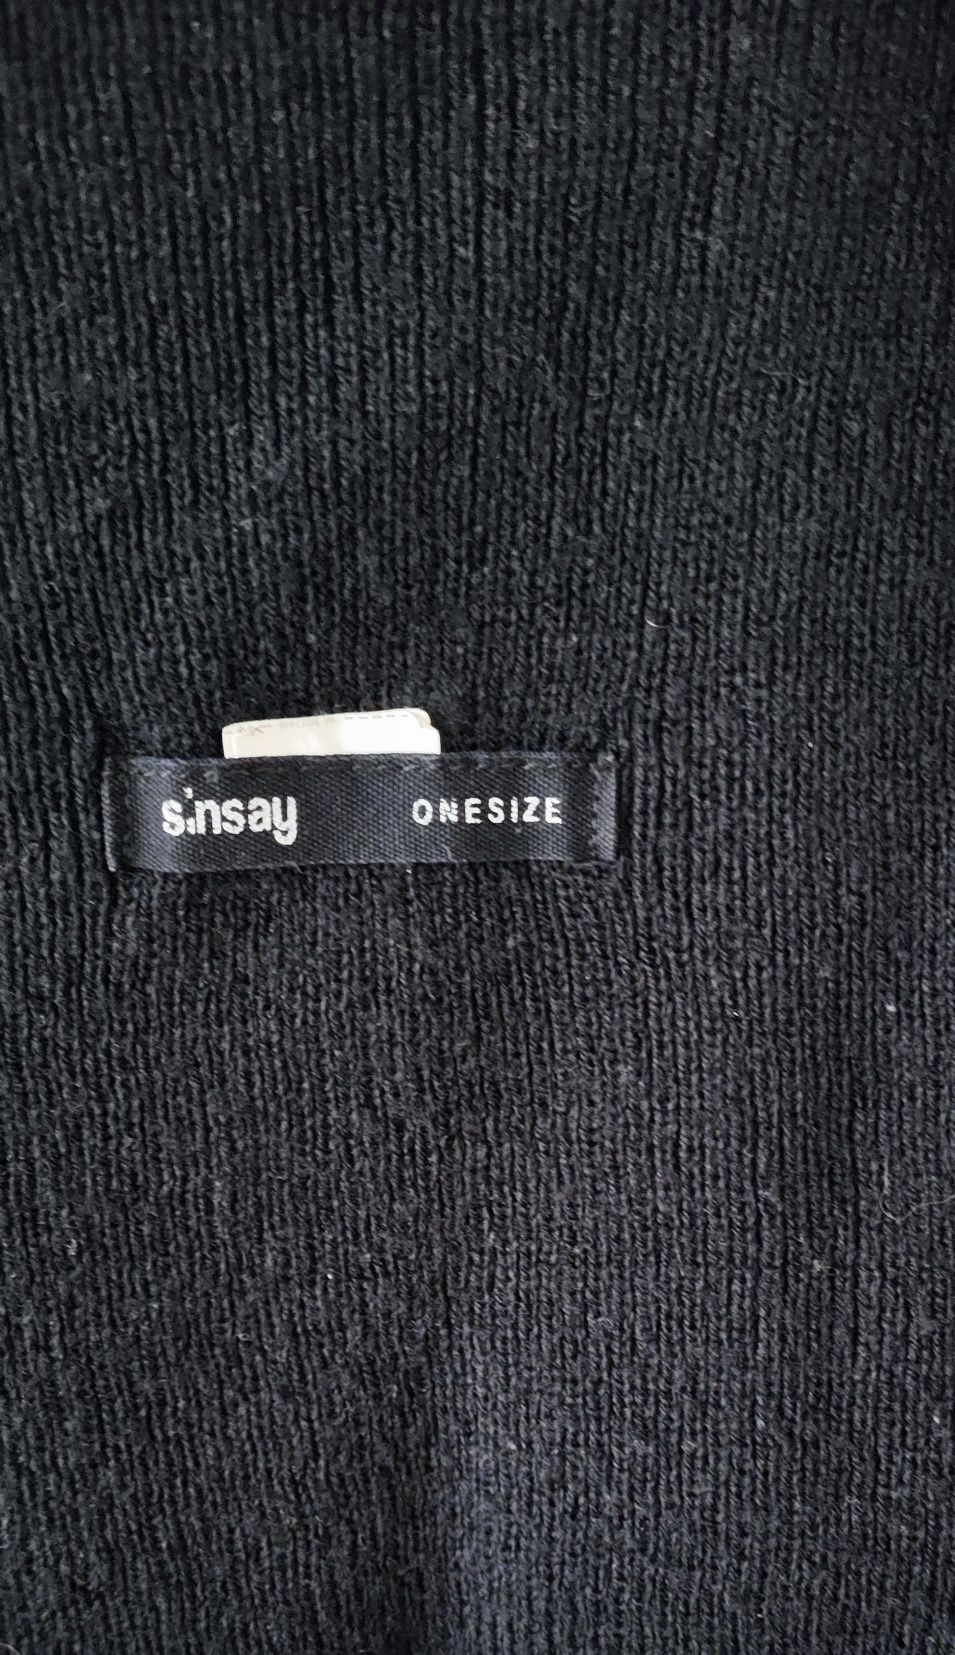 Sinsay One size czapka czarna r. L